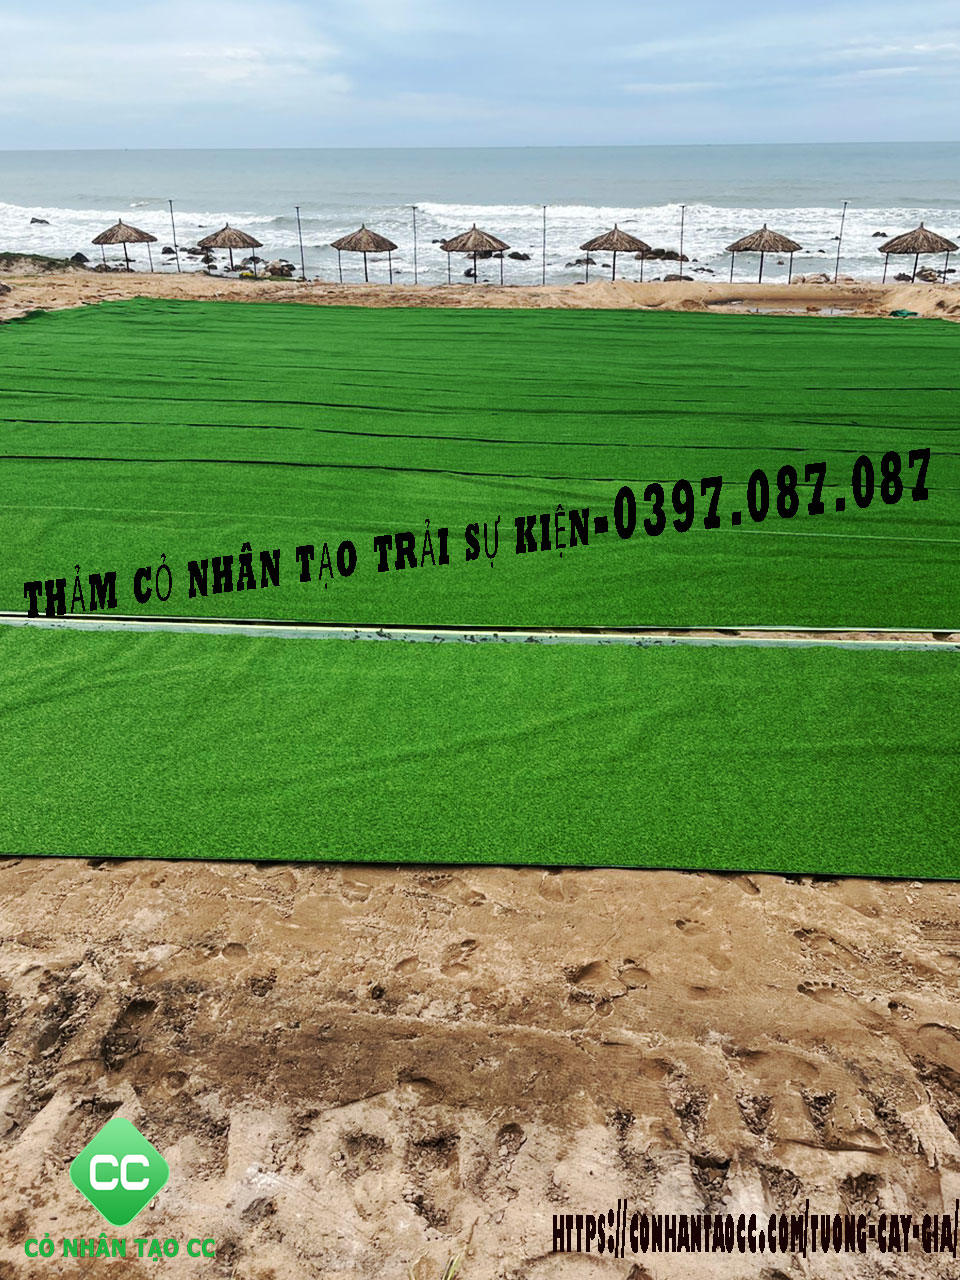 Thảm cỏ nhân tạo trải bãi biển